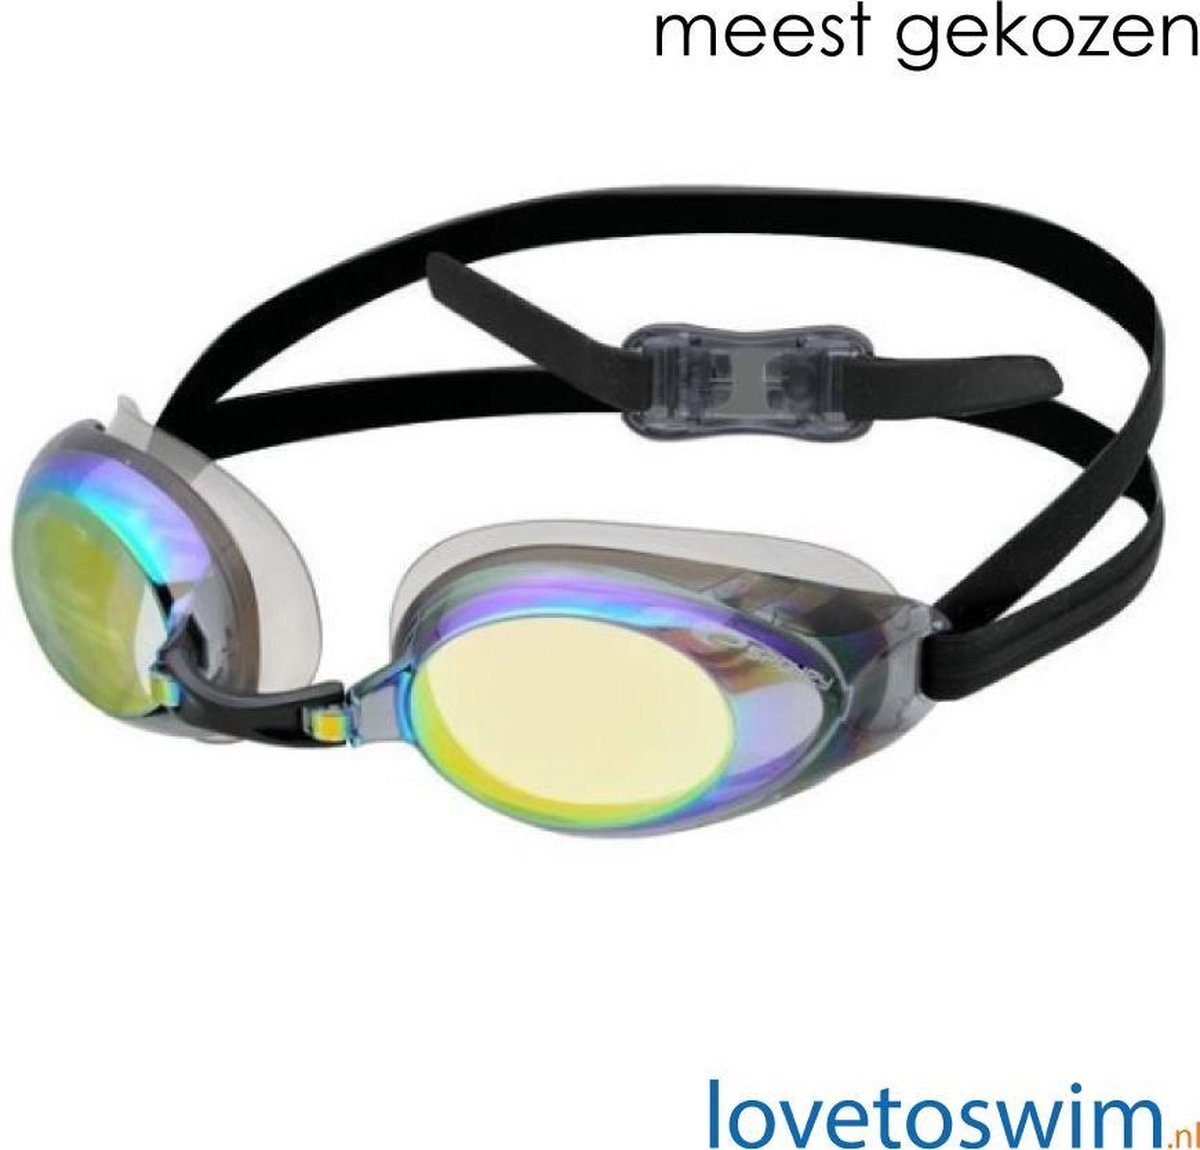 lovetoswim.nl Protrainer Zwembril Mirror - Meest gekozen